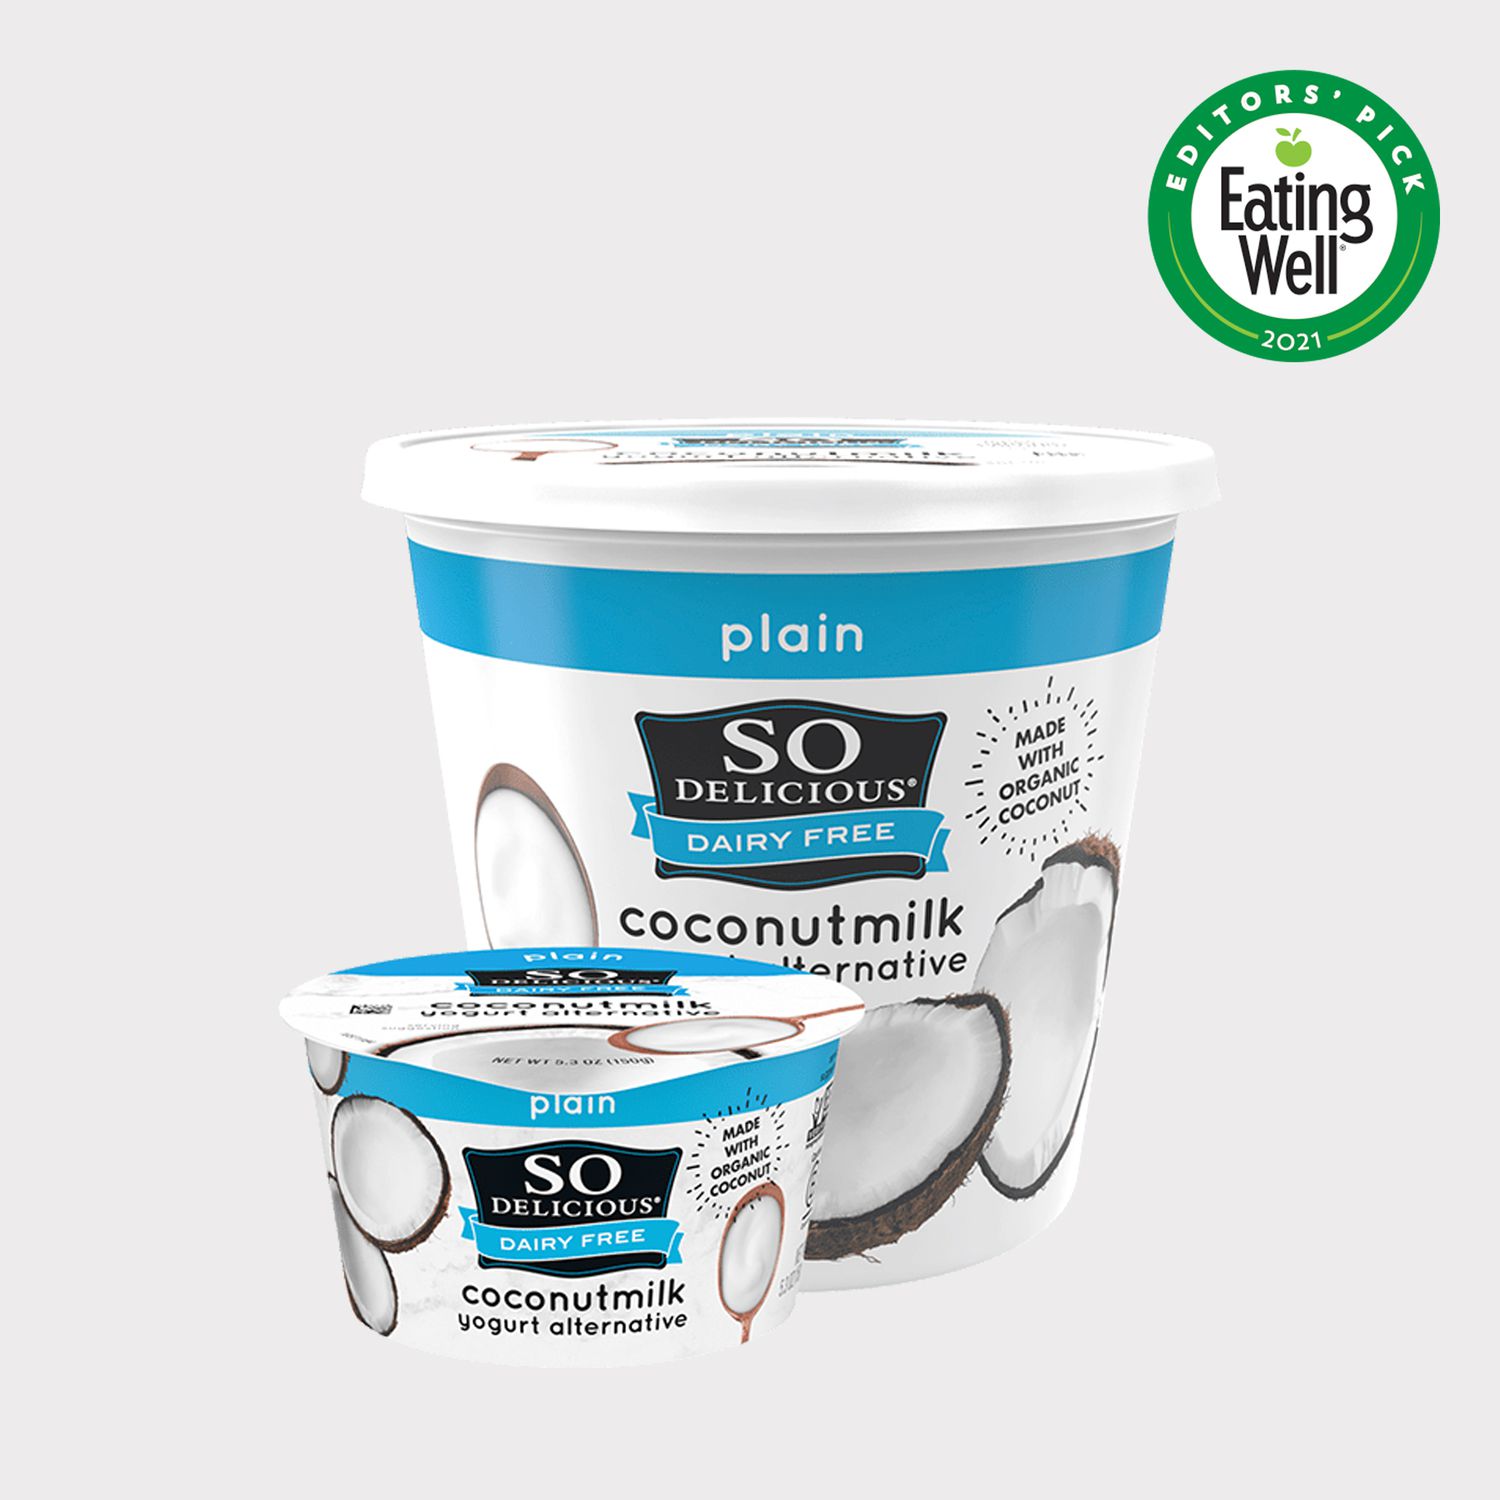 So Delicious Dairy Free Coconut-milk yogurt alternative